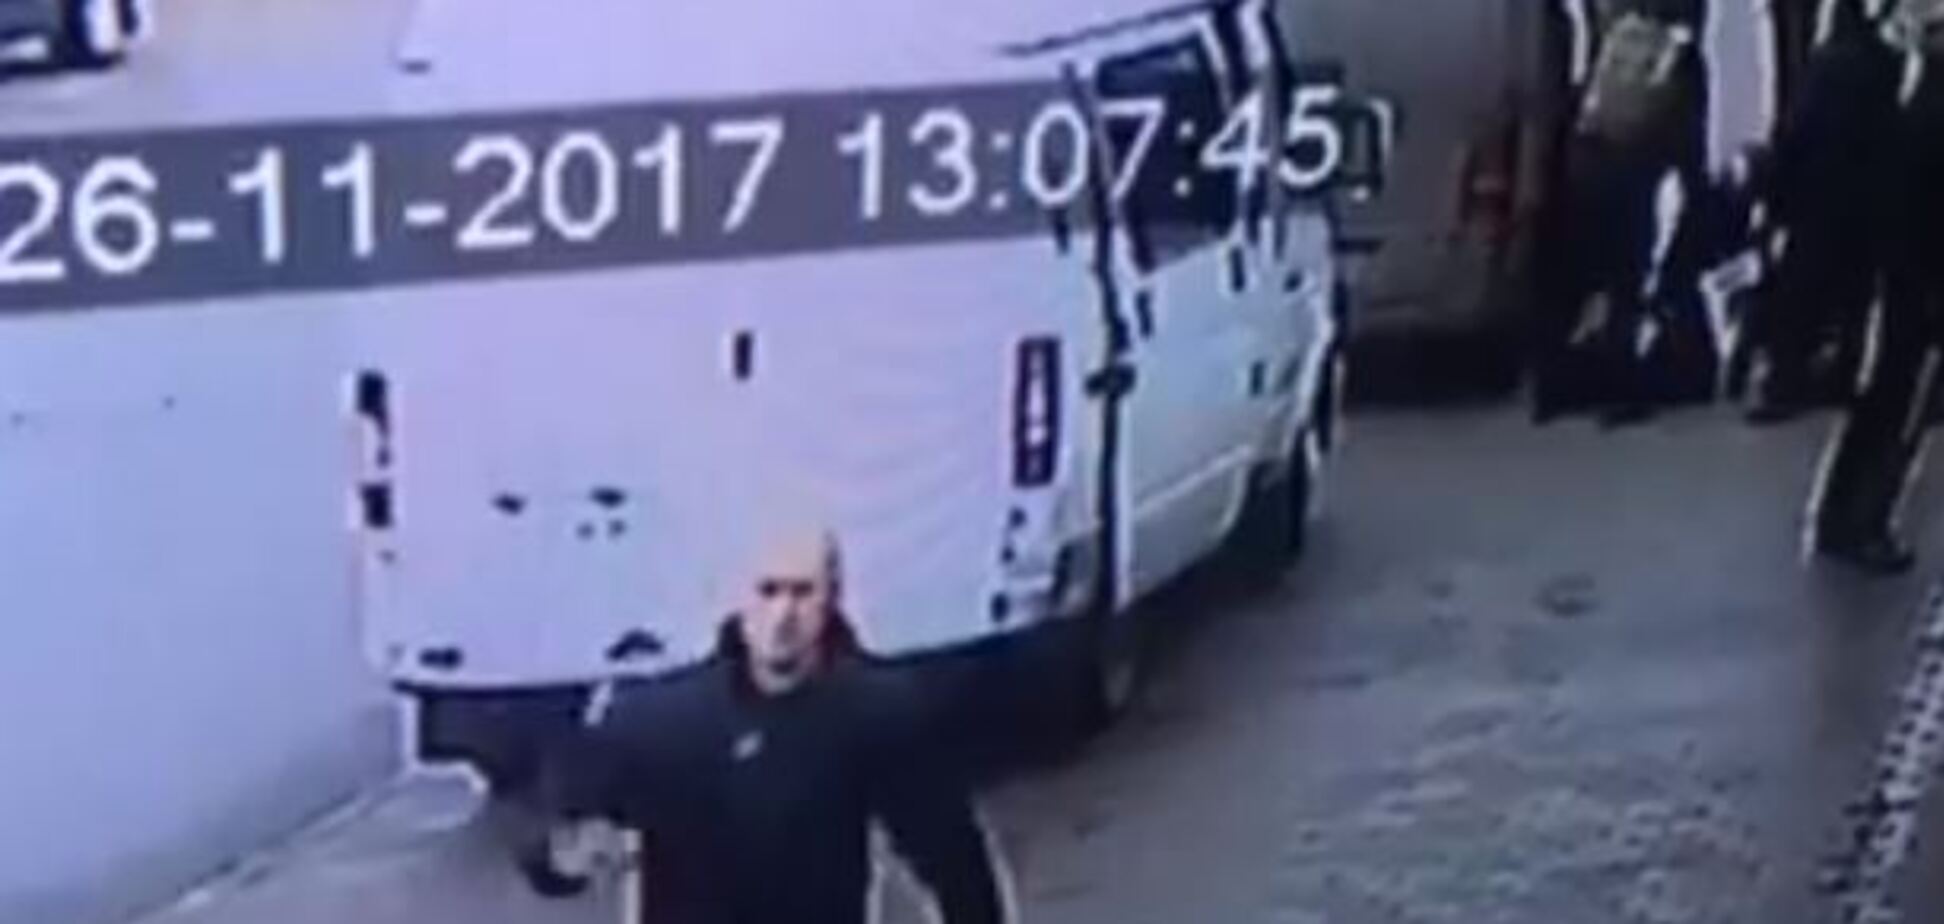 В Новоград-Волынском задержали экс-бойца АТО: появилось видео